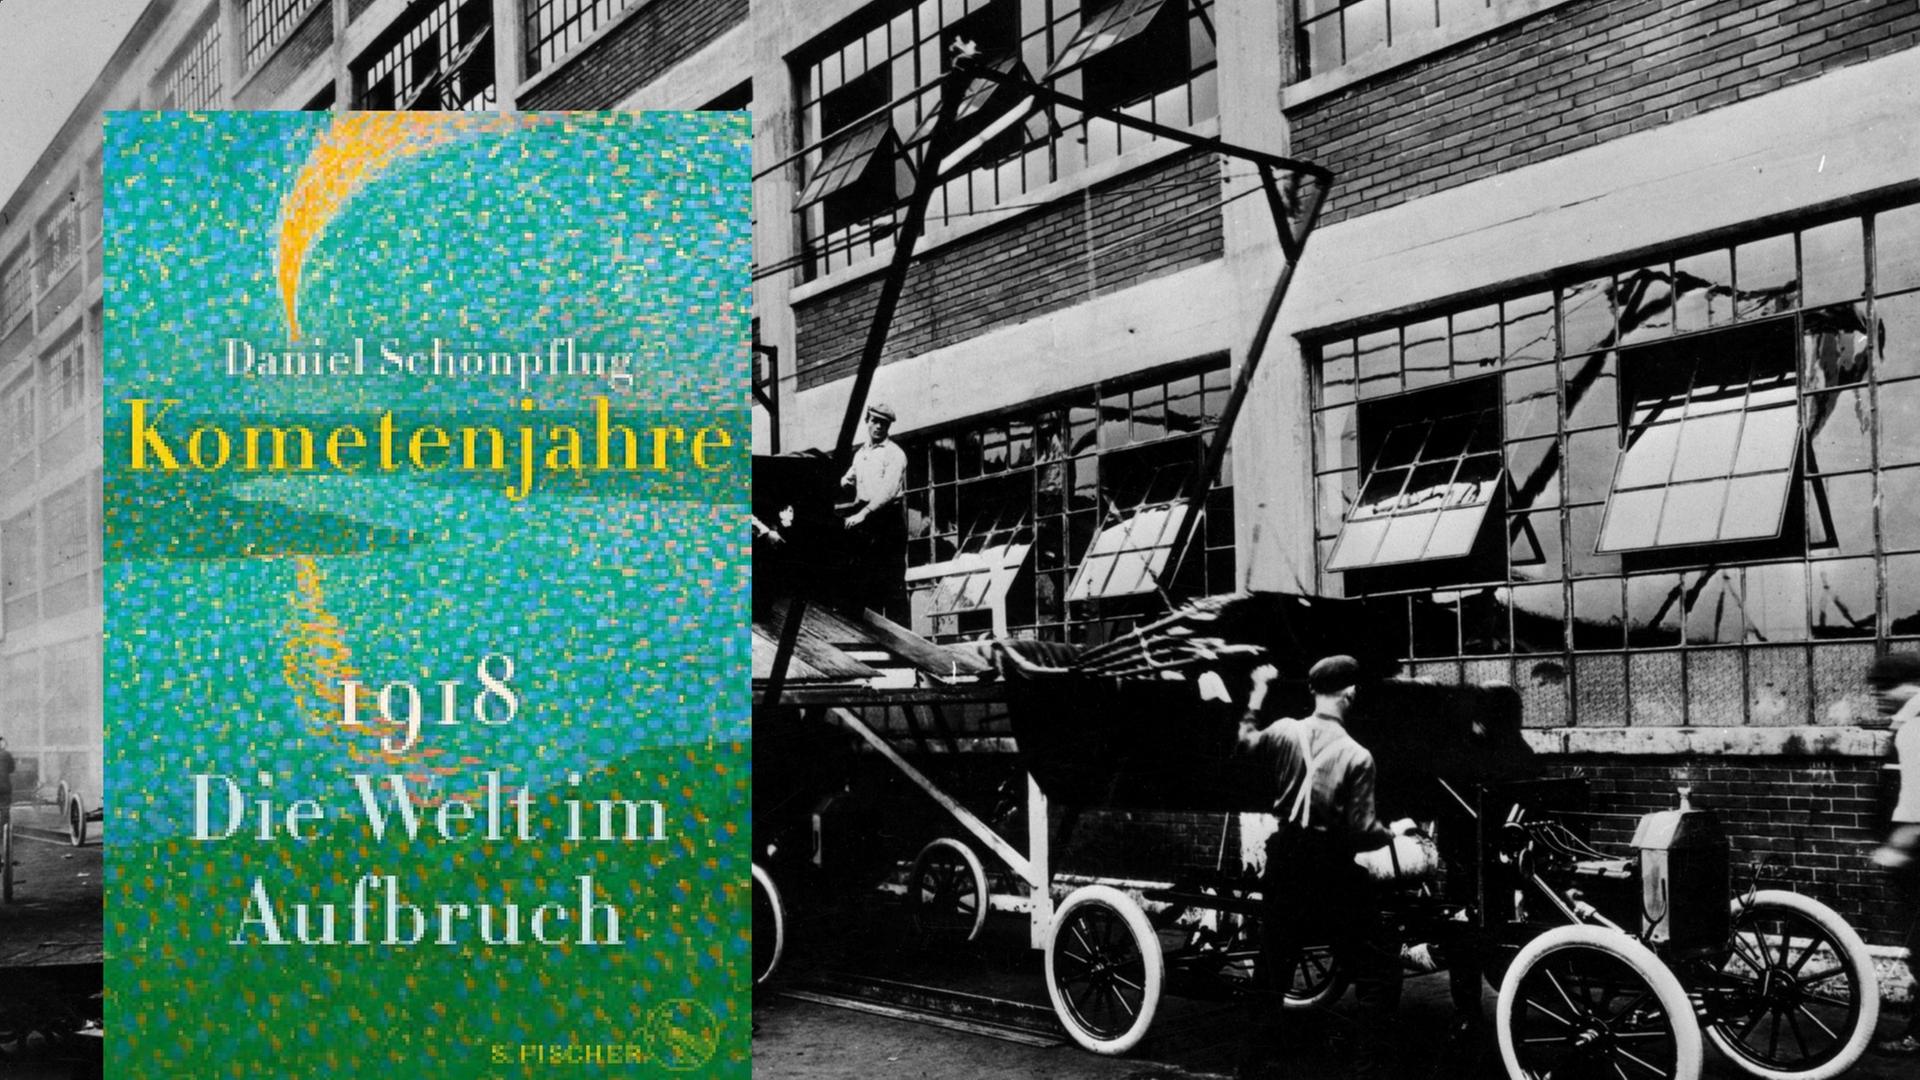 Buchcover: Daniel Schönpflug "Kometenjahre" vor dem Hintergrund einer Automobilfabrik